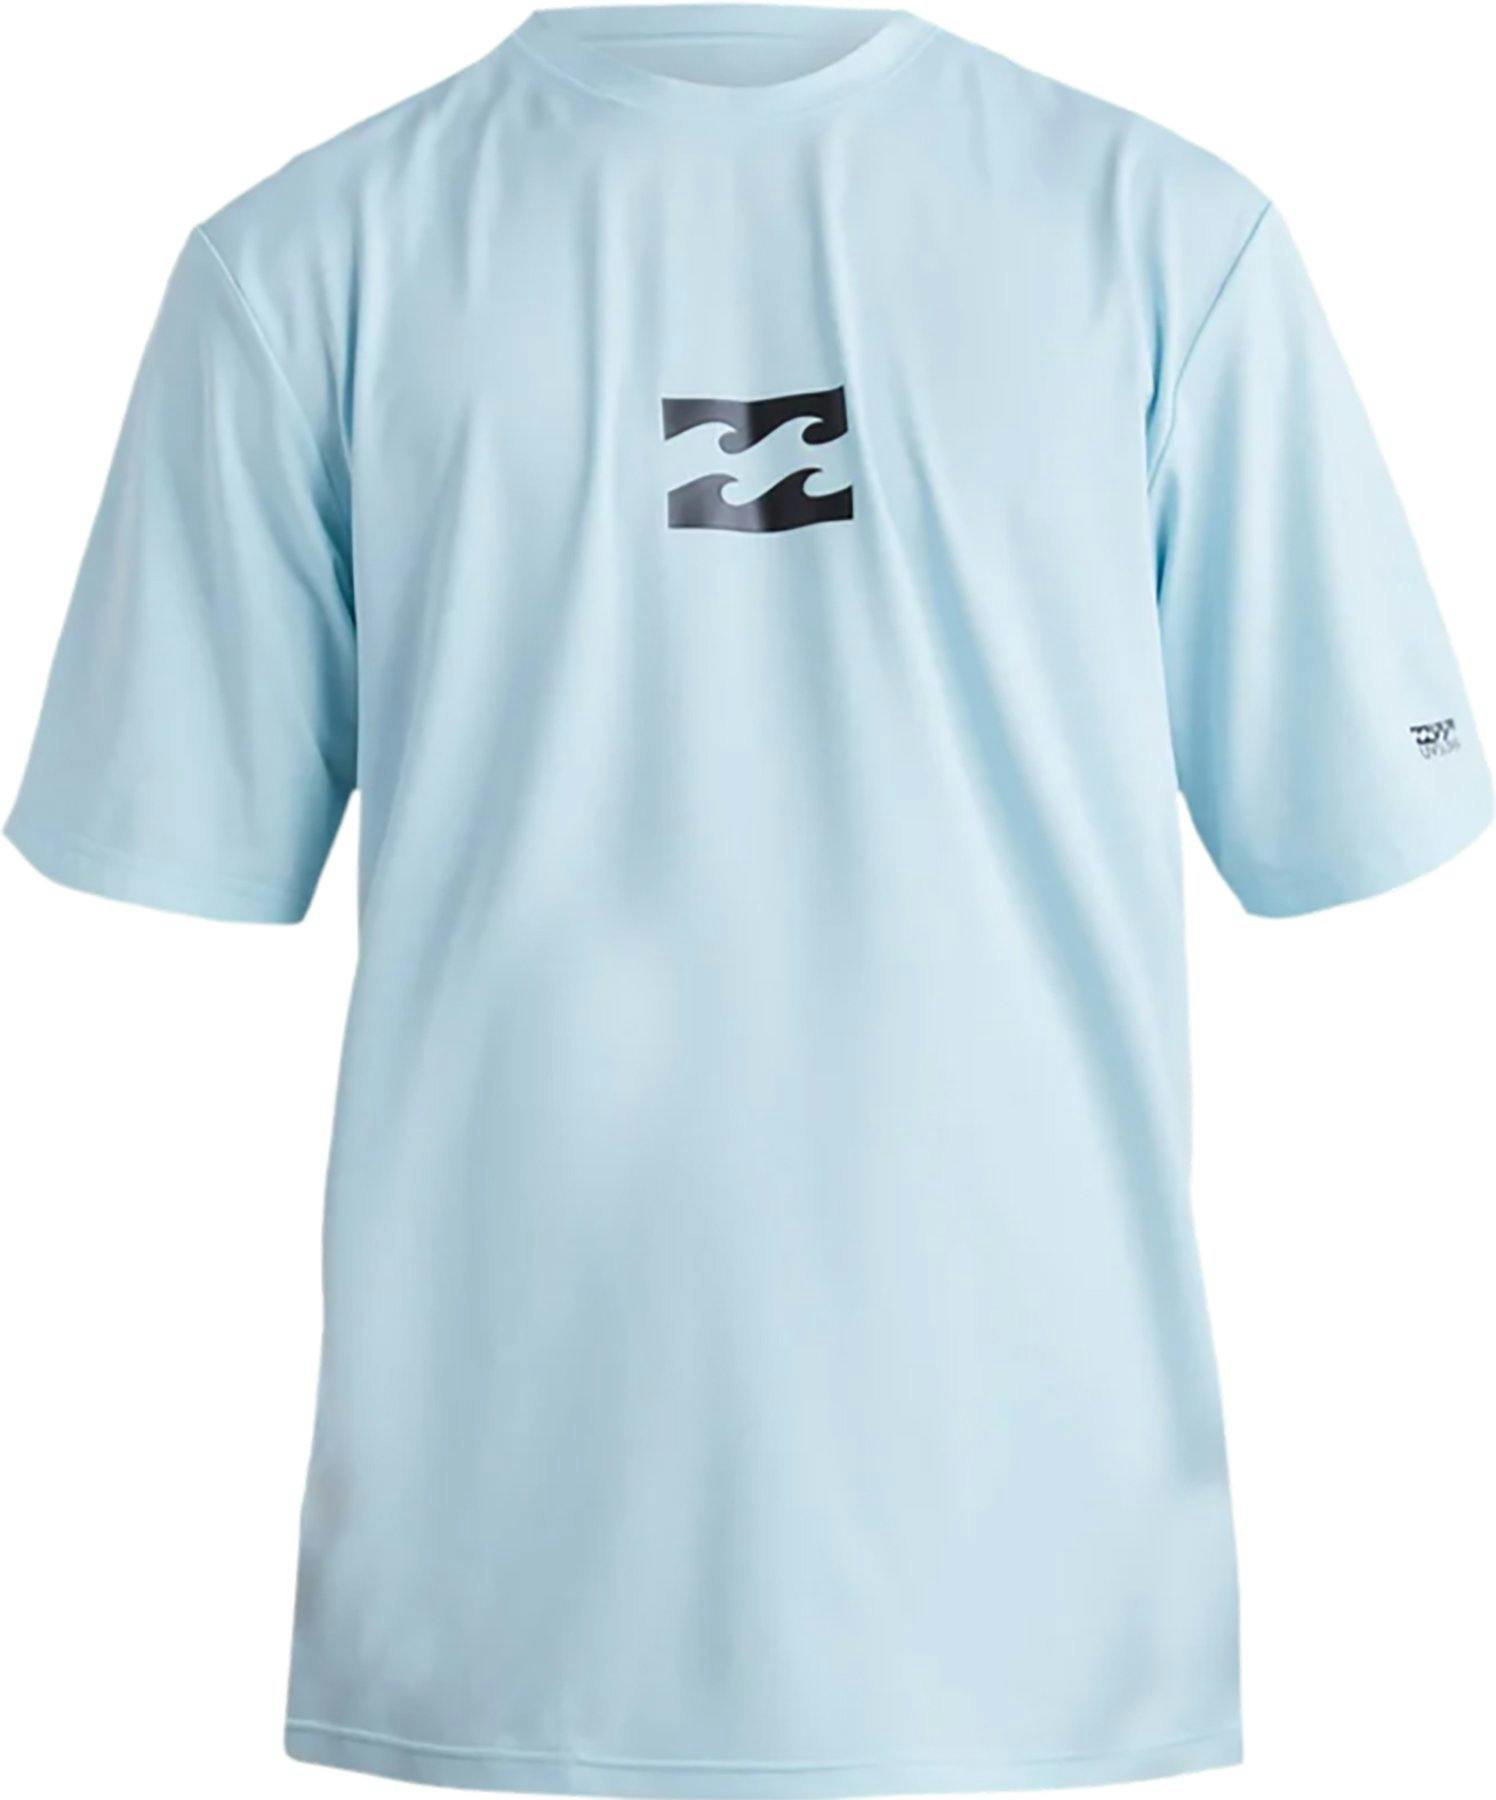 Image de produit pour T-shirt de surf à manches courtes coupe ample All Day Wave - Garçon